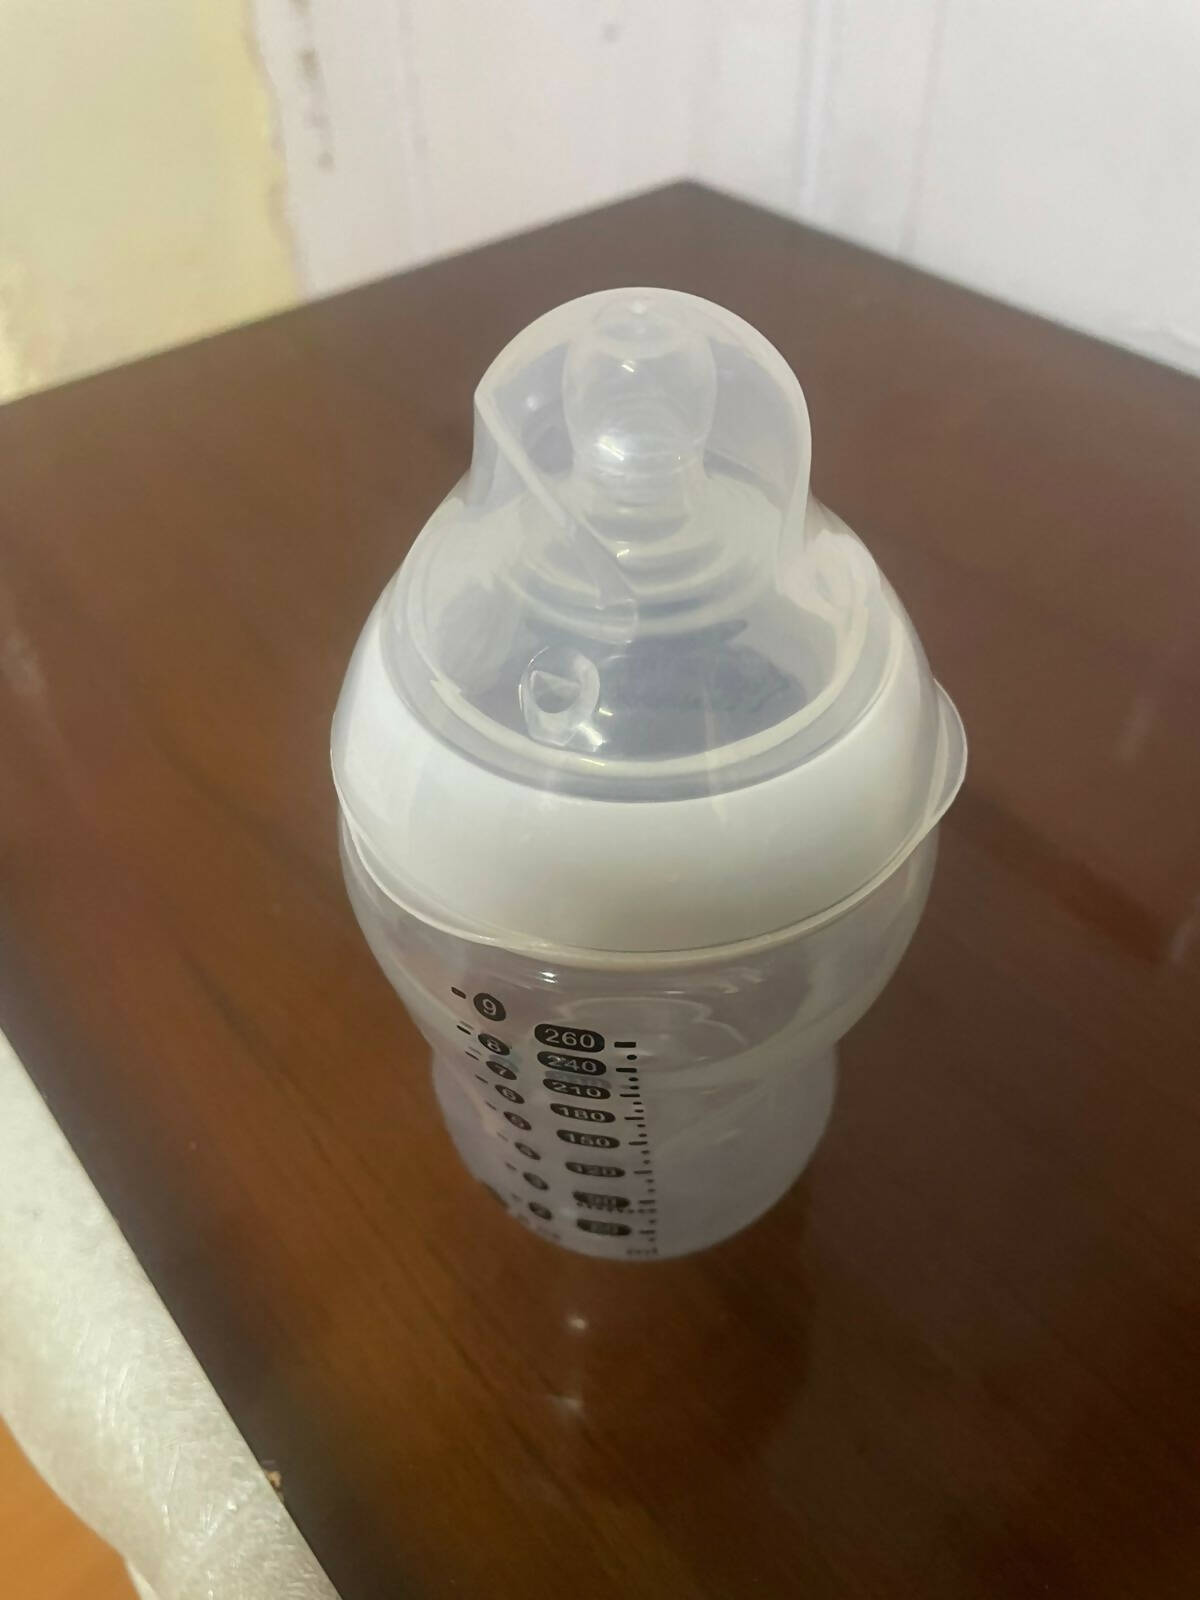 Tommee Tippee Anti-Colic Baby Bottles Slow Flow Breast-Like Nipple